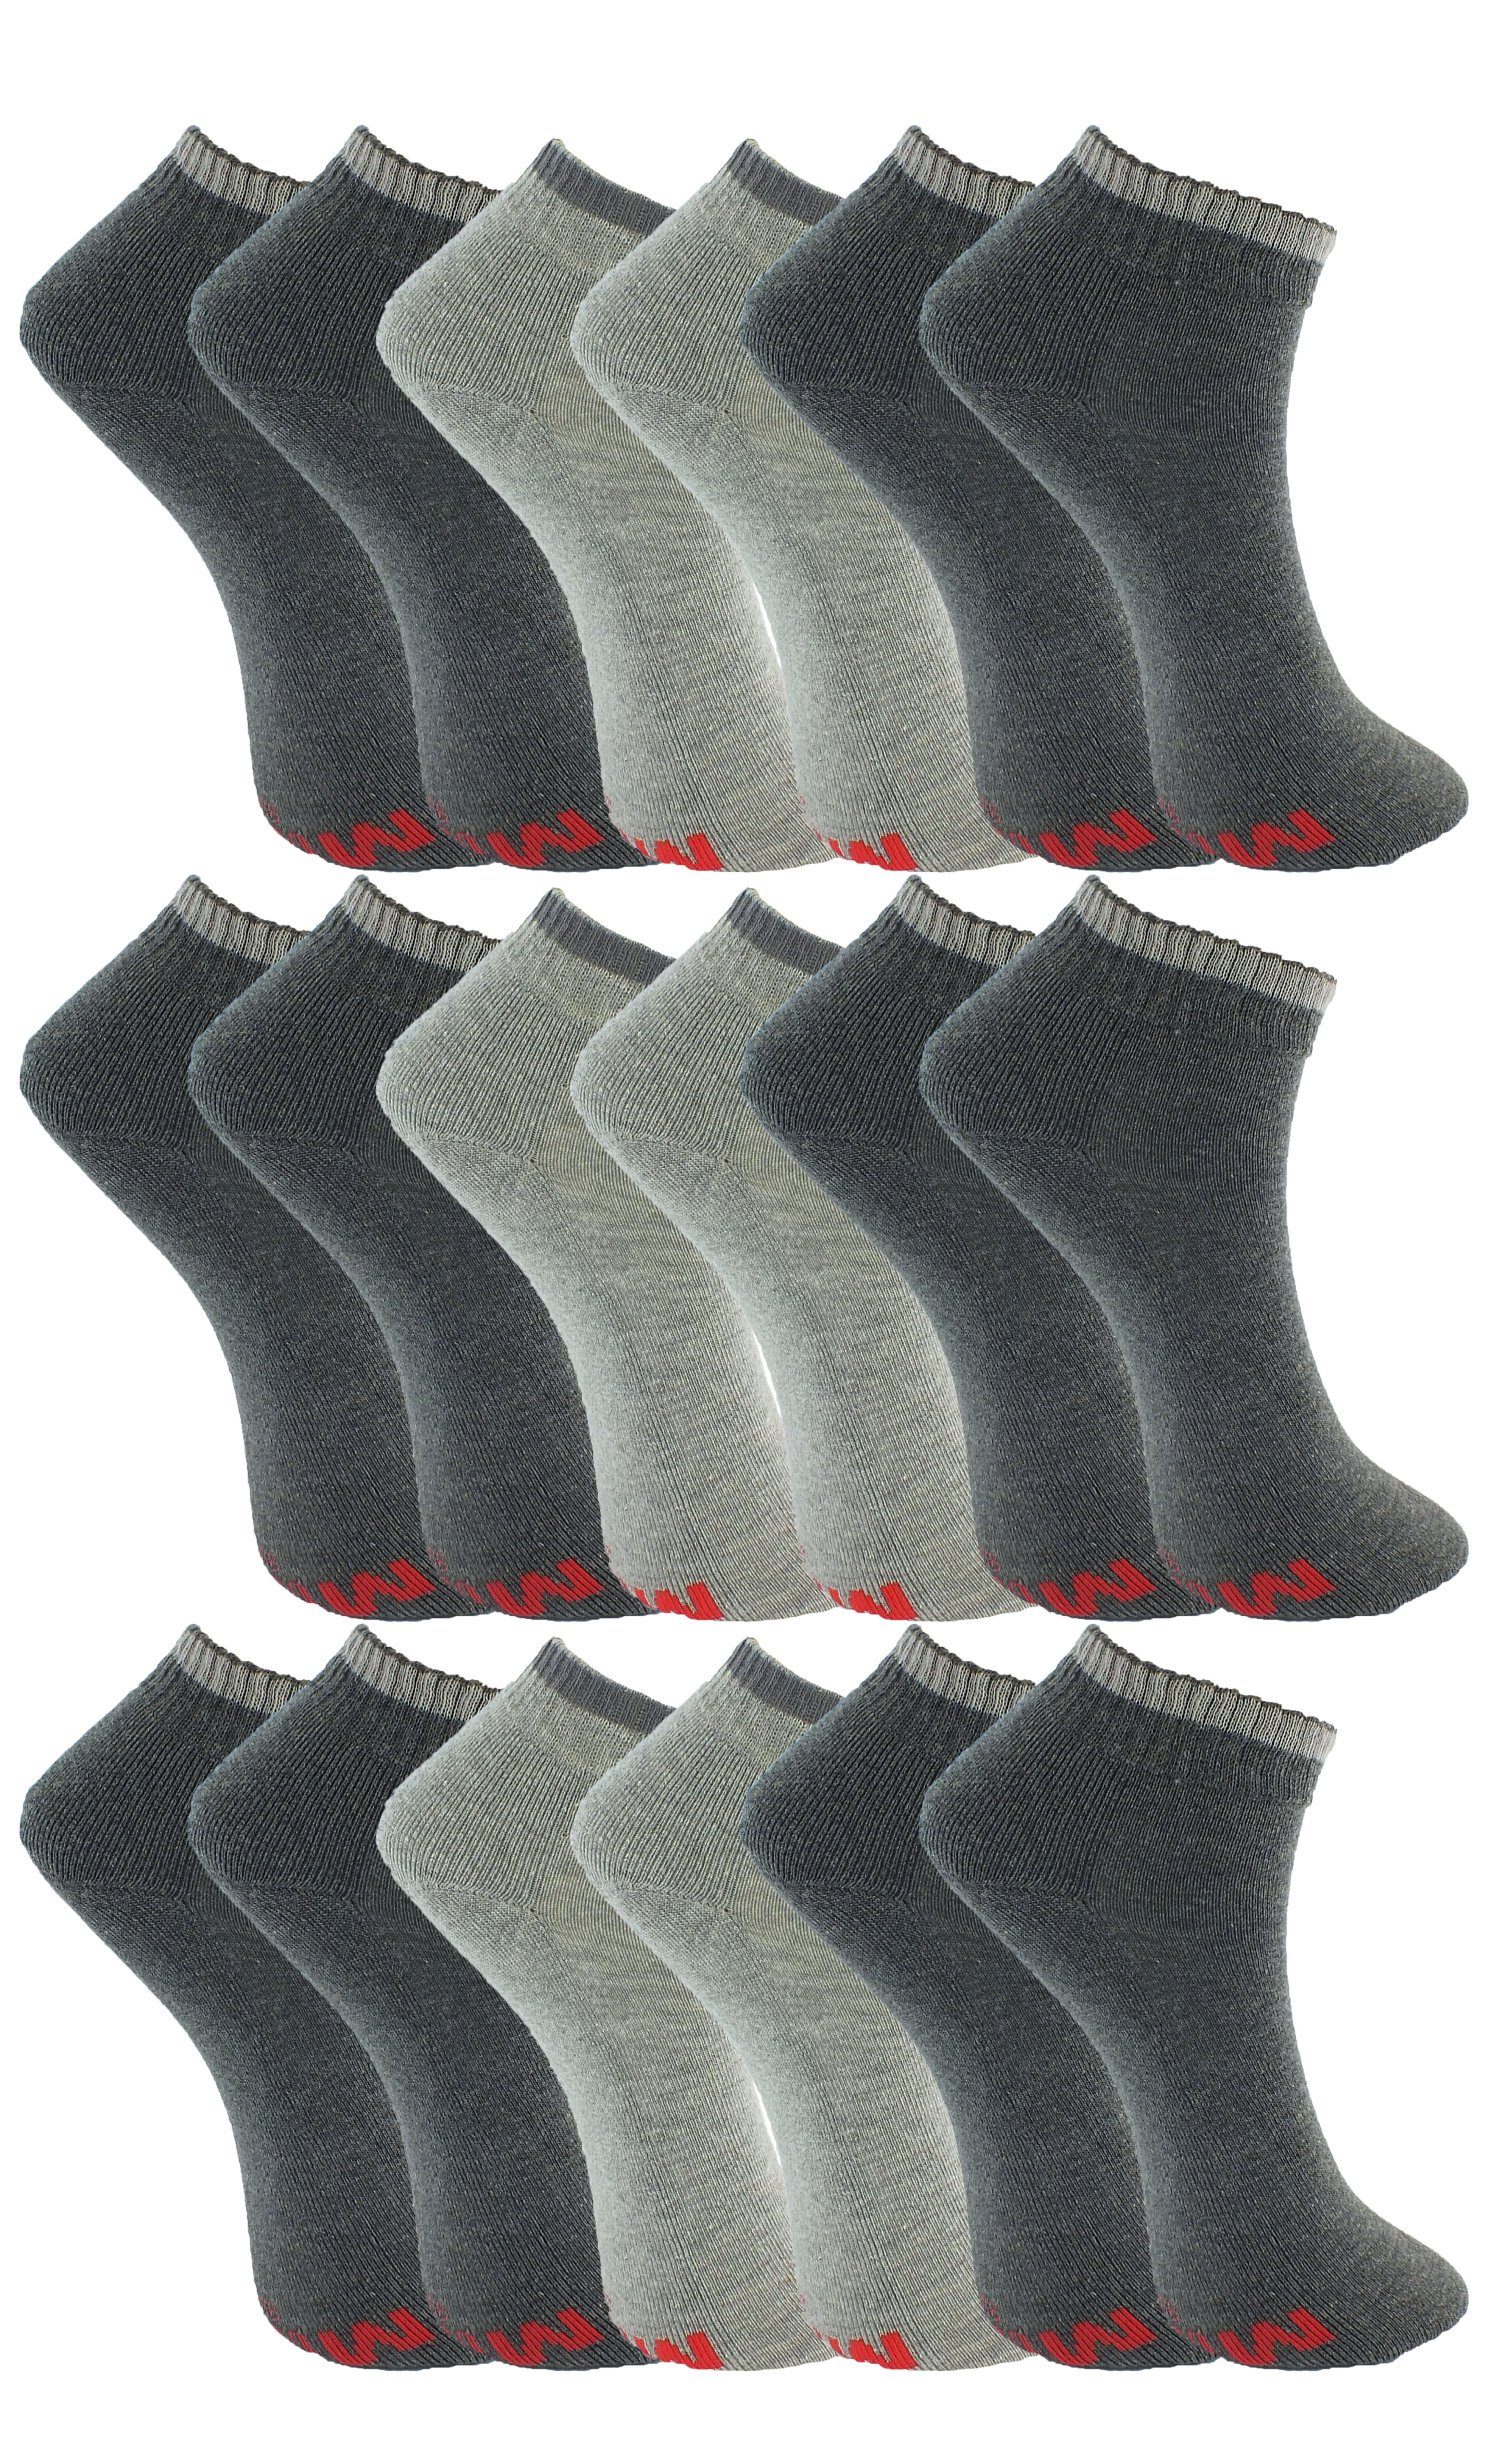 MUSTANG Kurzsocken grau Farben verschiedene (9-Paar)